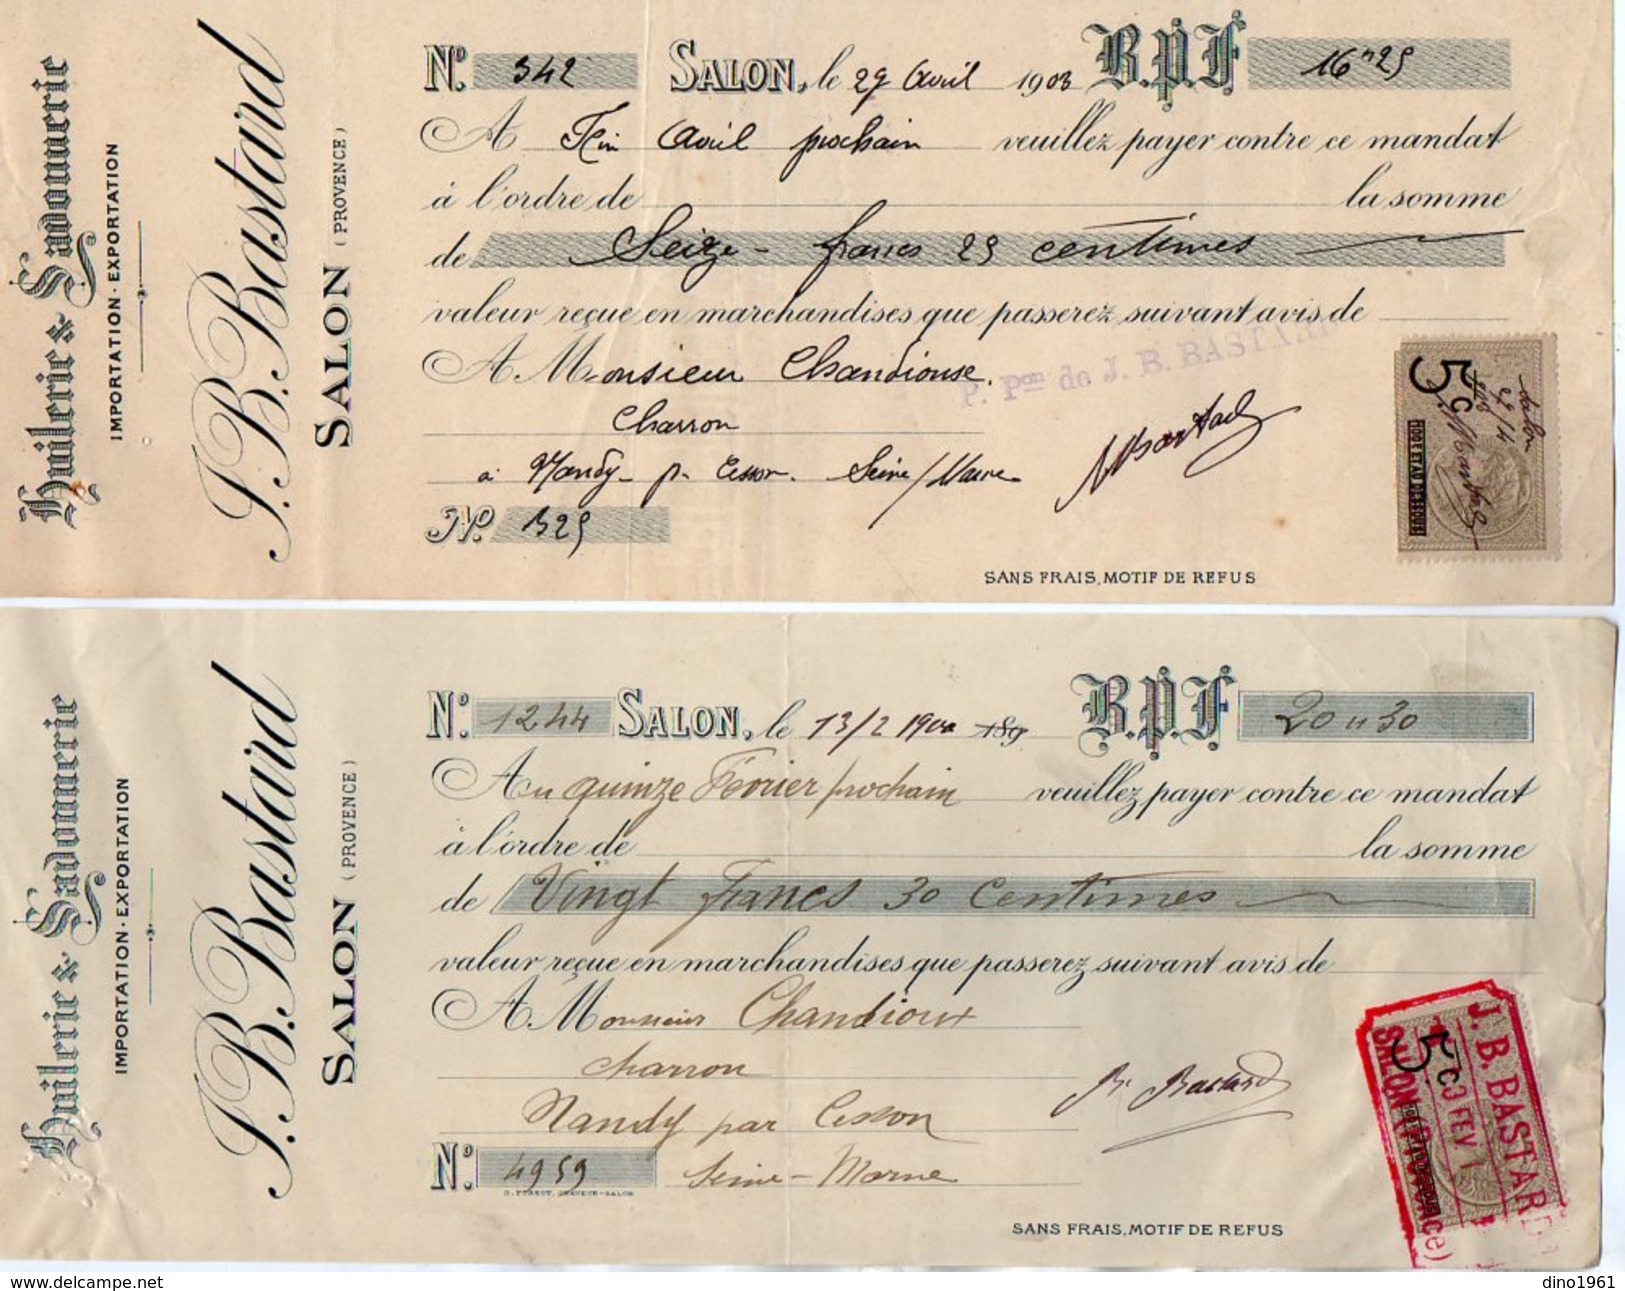 VP9119 -  2 Lettres De Change - Huilerie & Savonnerie J. B BASTARD à SALON DE PROVENCE - Bills Of Exchange